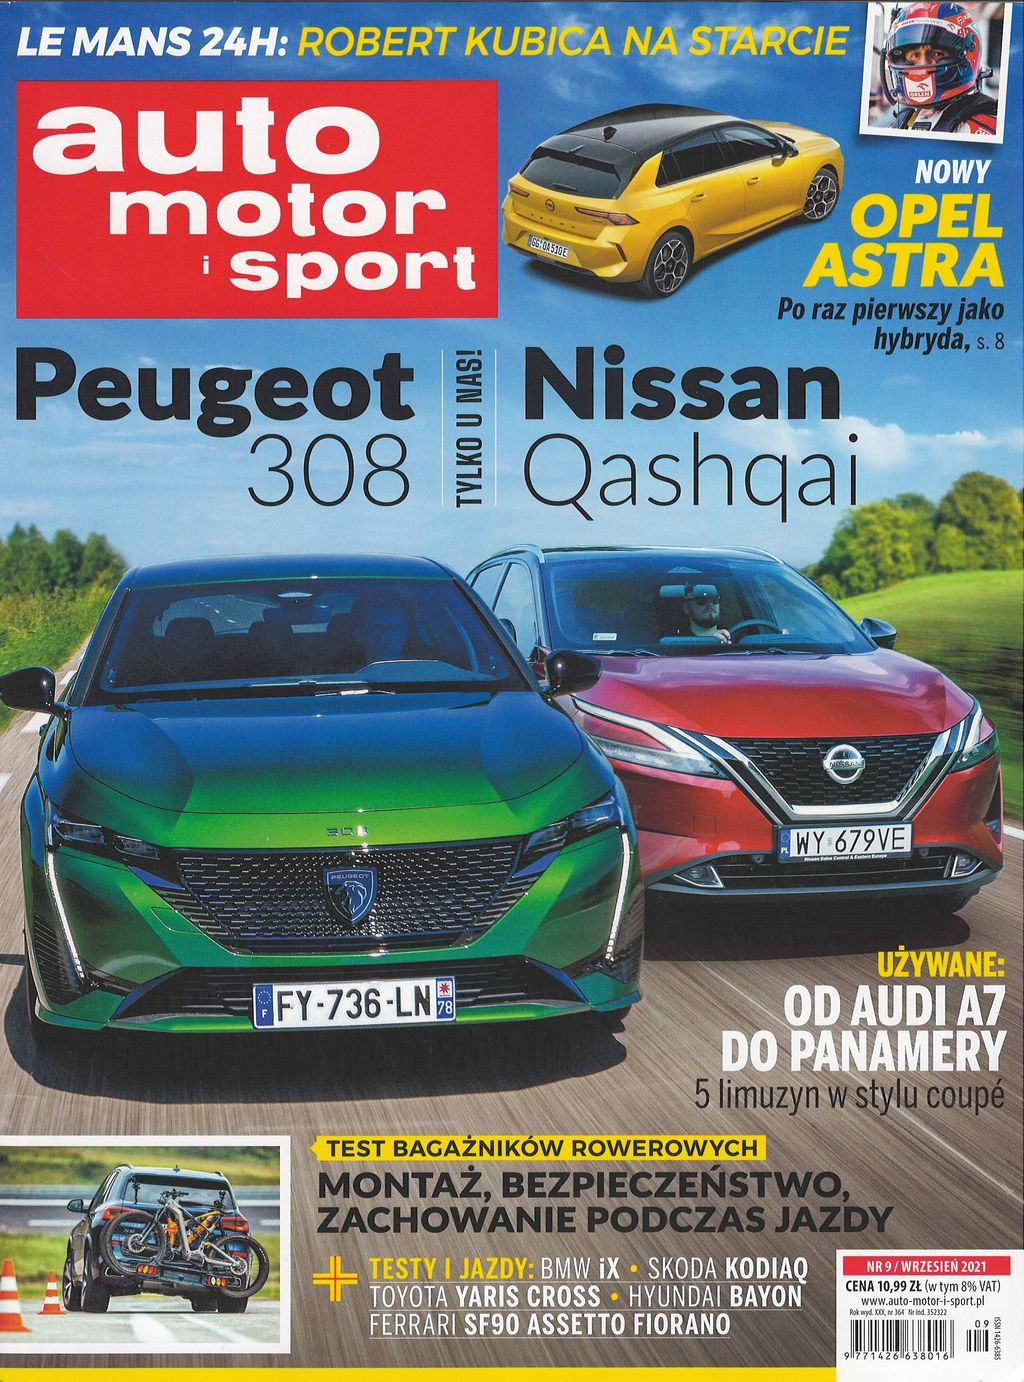 Superbe nouvelle Peugeot 308 !  Revue de presse biaisée : AUTO MOTOR I SPORT nº 09/2021 |  français.pl